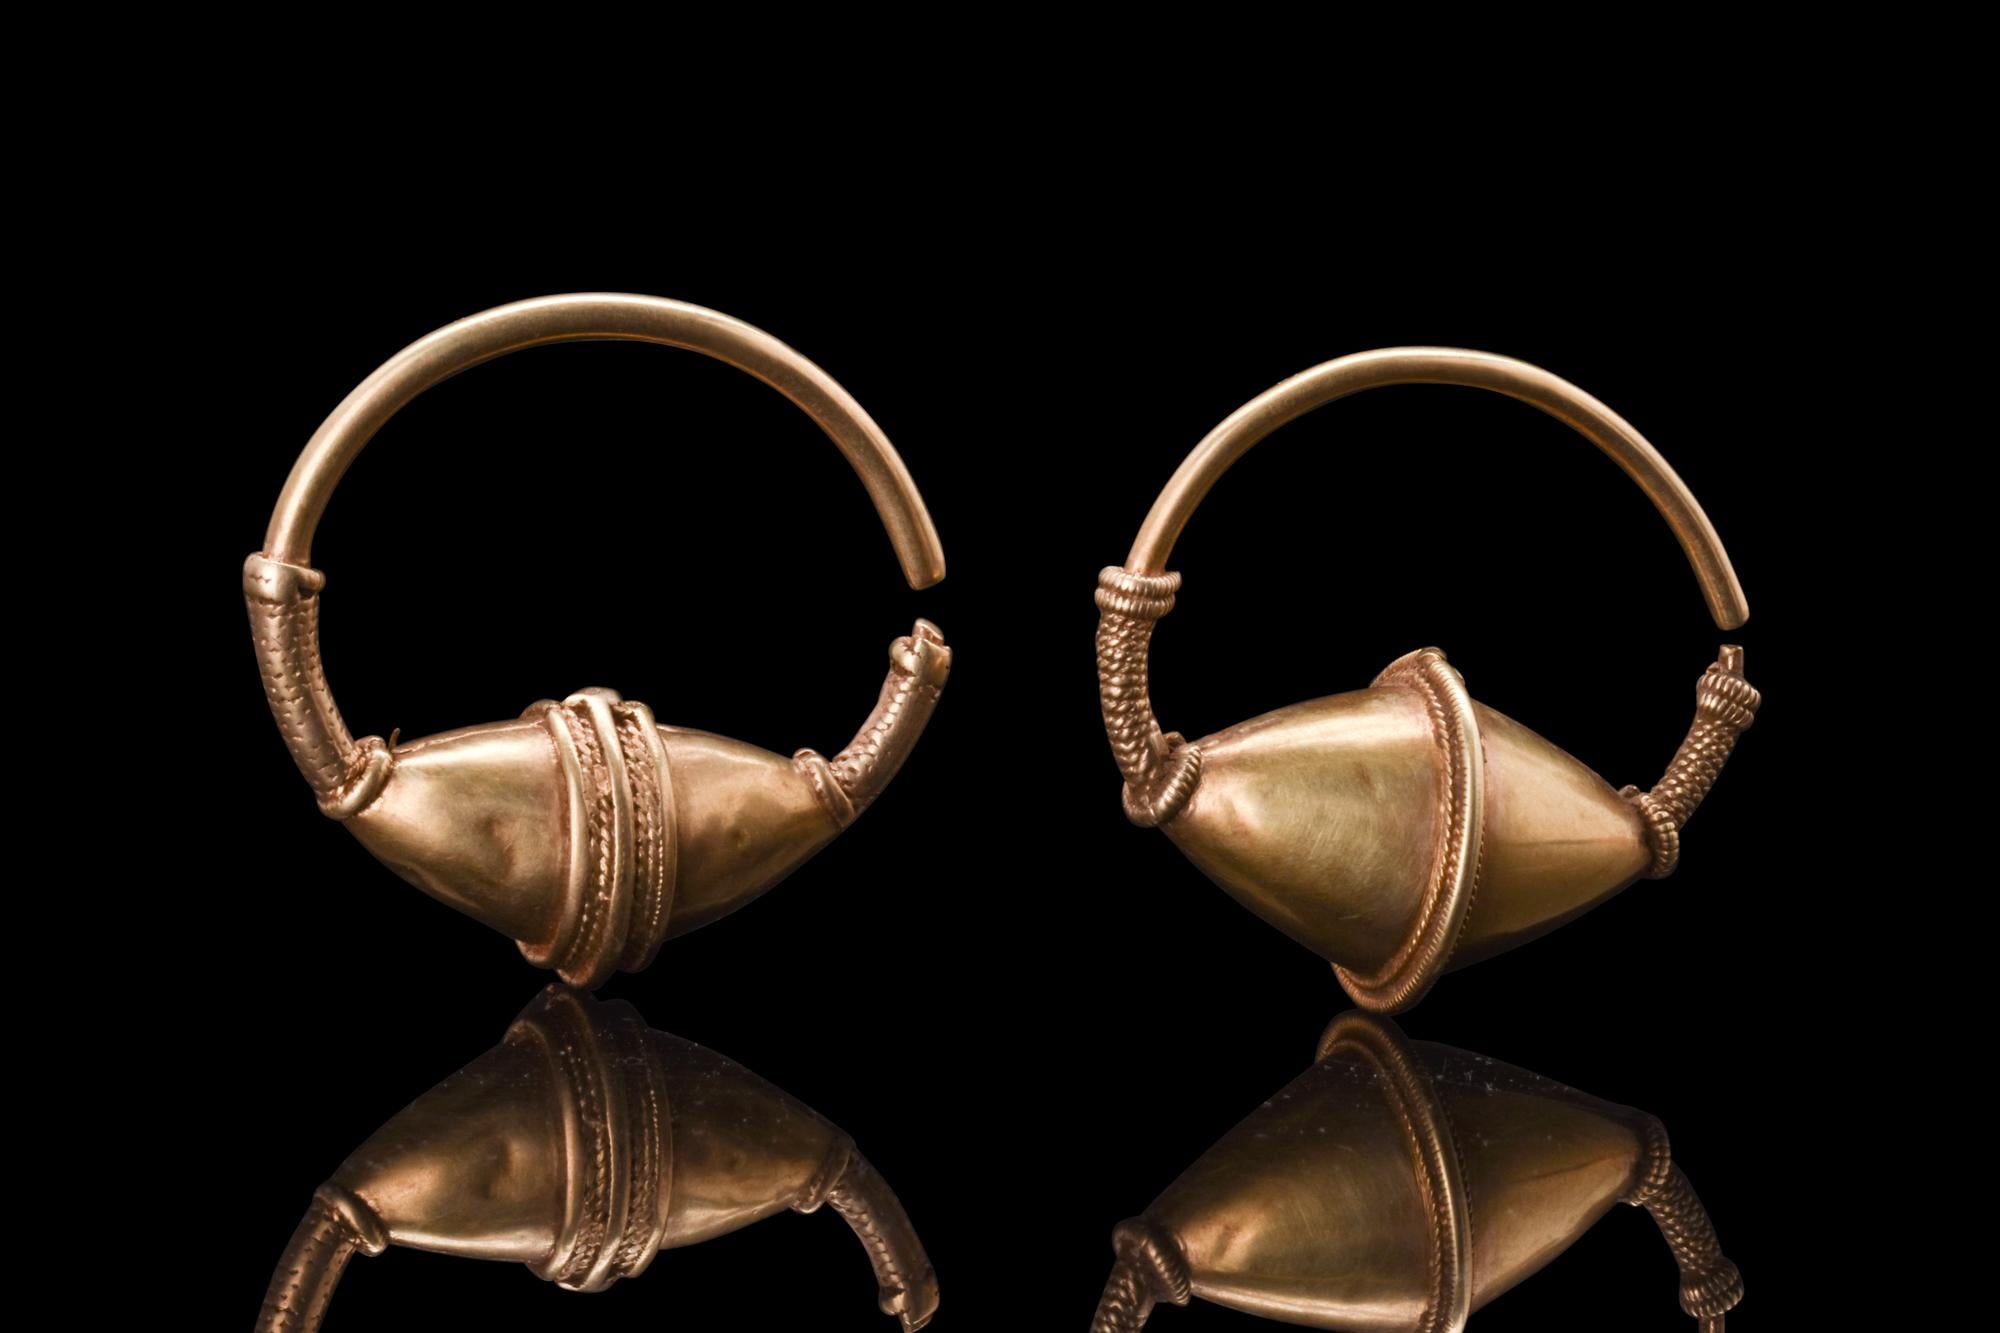 Ein byzantinisches Paar passender Elektrum-Ohrringe, die mit größter Kunstfertigkeit und Sorgfalt hergestellt werden. Jeder Ohrring besteht aus einem runden Reif mit einer zentralen, bikonischen Verzierung, die innen hohl ist. Die bikonischen